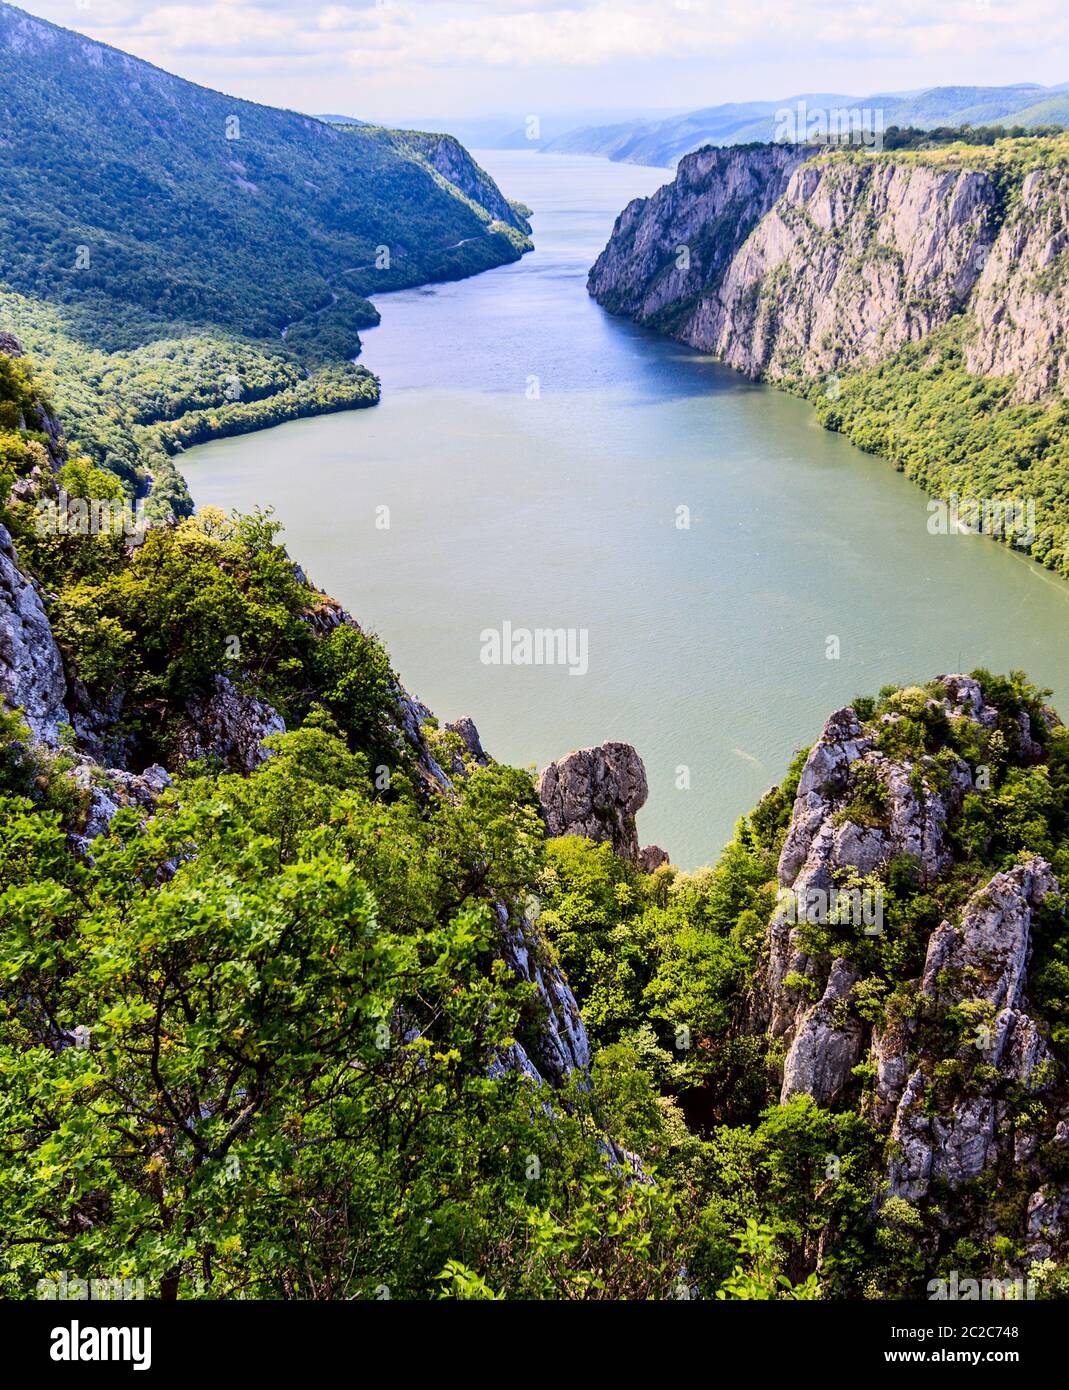 Hermoso paisaje natural, río Danubio garganta, las Puertas de Hierro , situado en el este de Serbia, frontera con Rumania, Europa Foto de stock